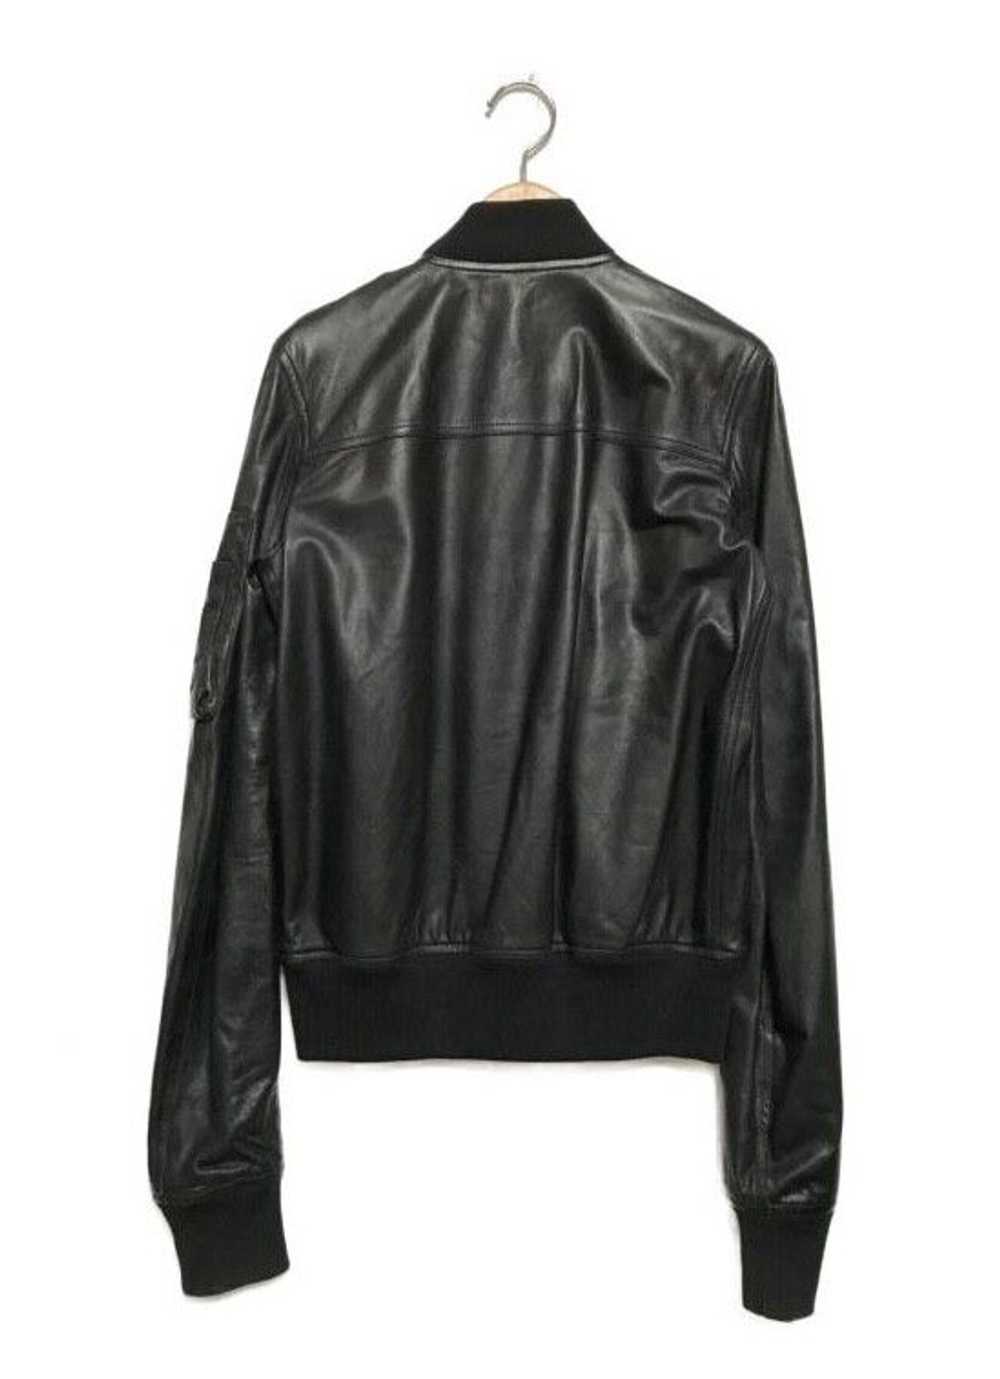 Rick Owens Rick Owens leather MA-1 bomber jacket - image 2